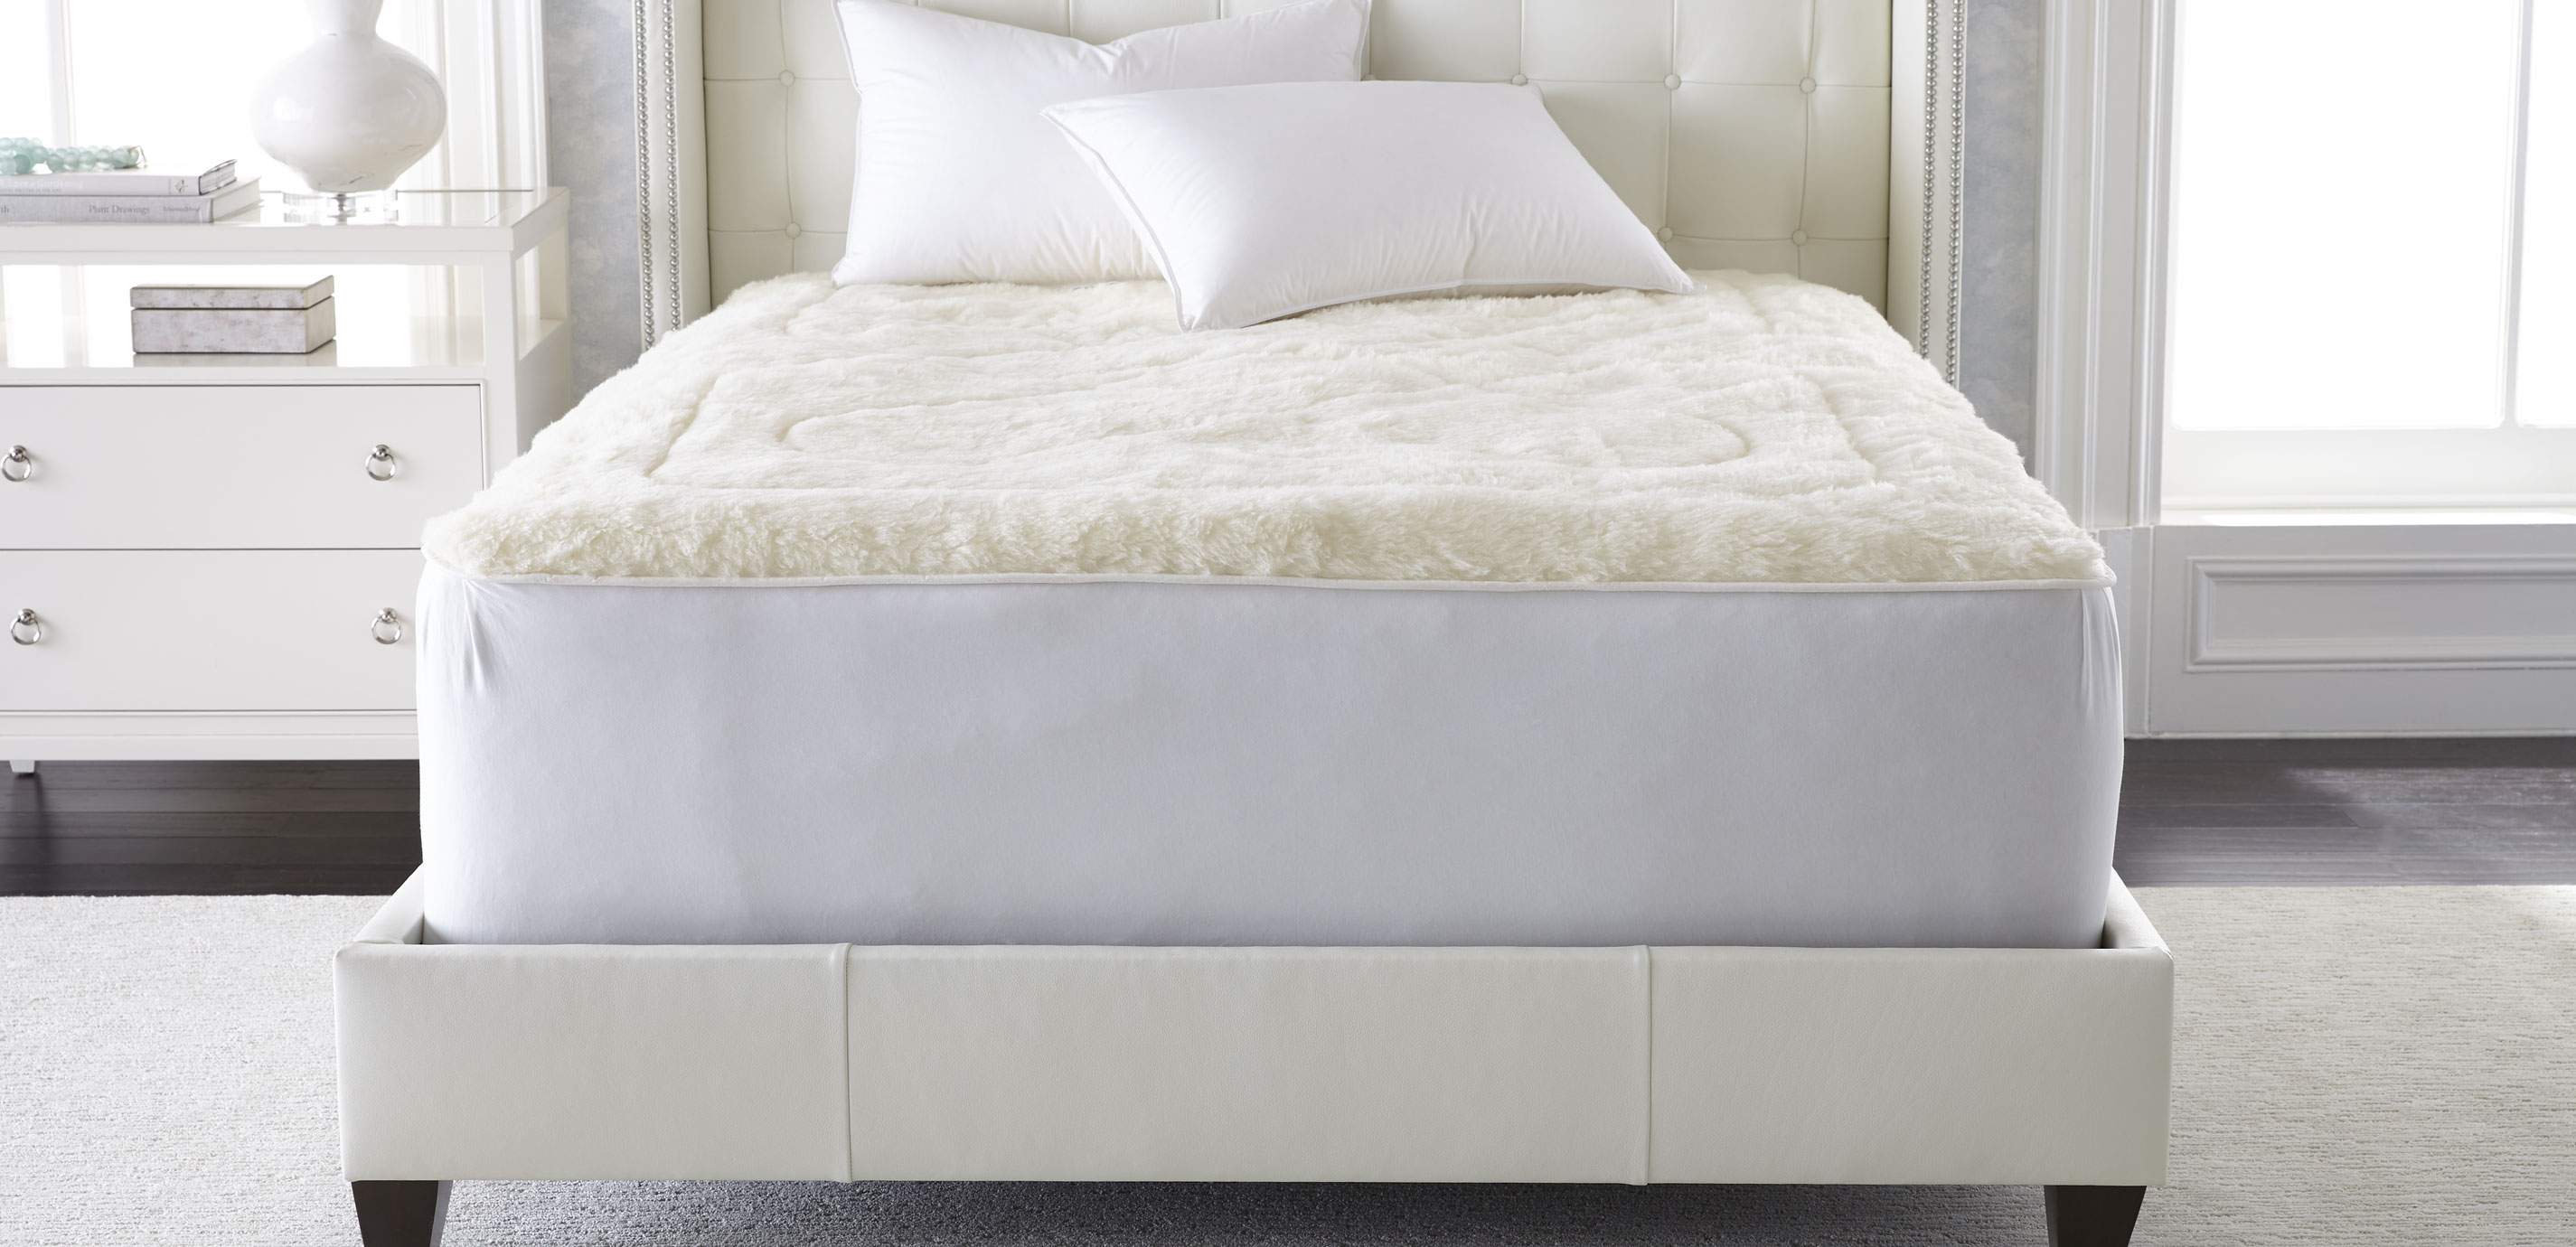 australian wool mattress pad from canada